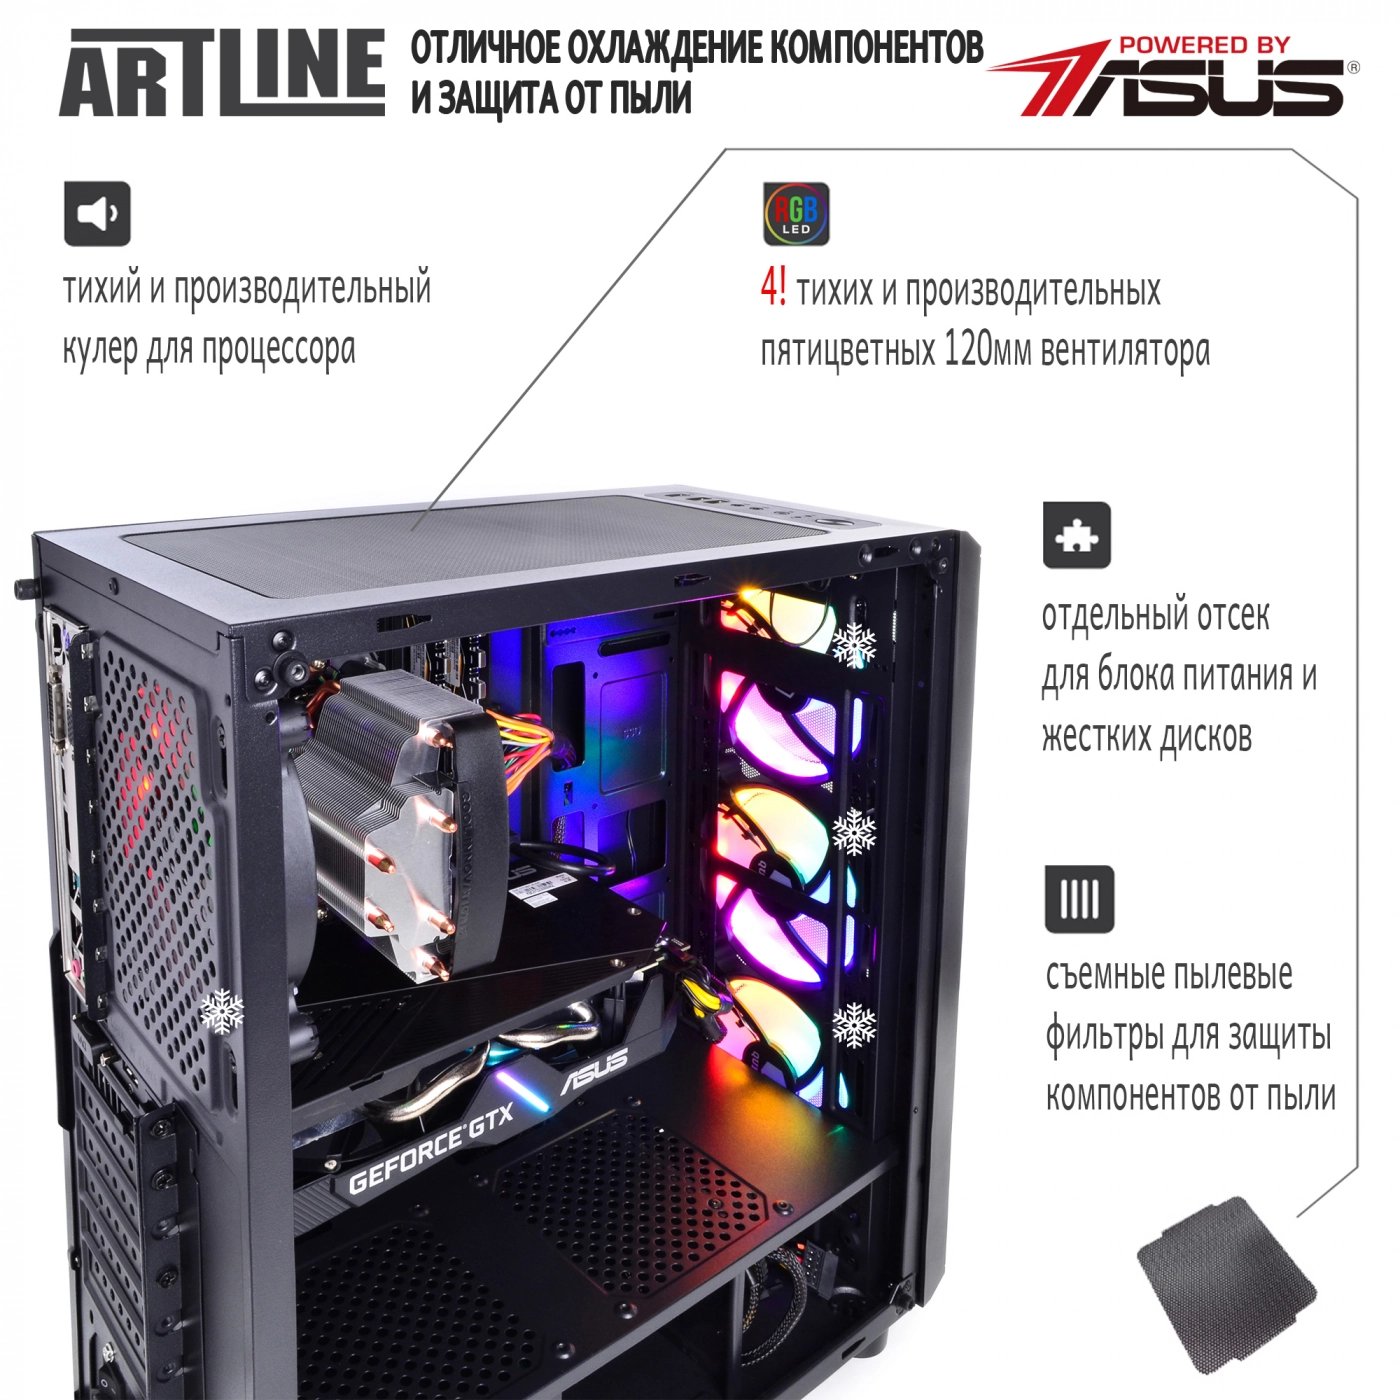 Купить Компьютер ARTLINE Gaming X56v14 - фото 3